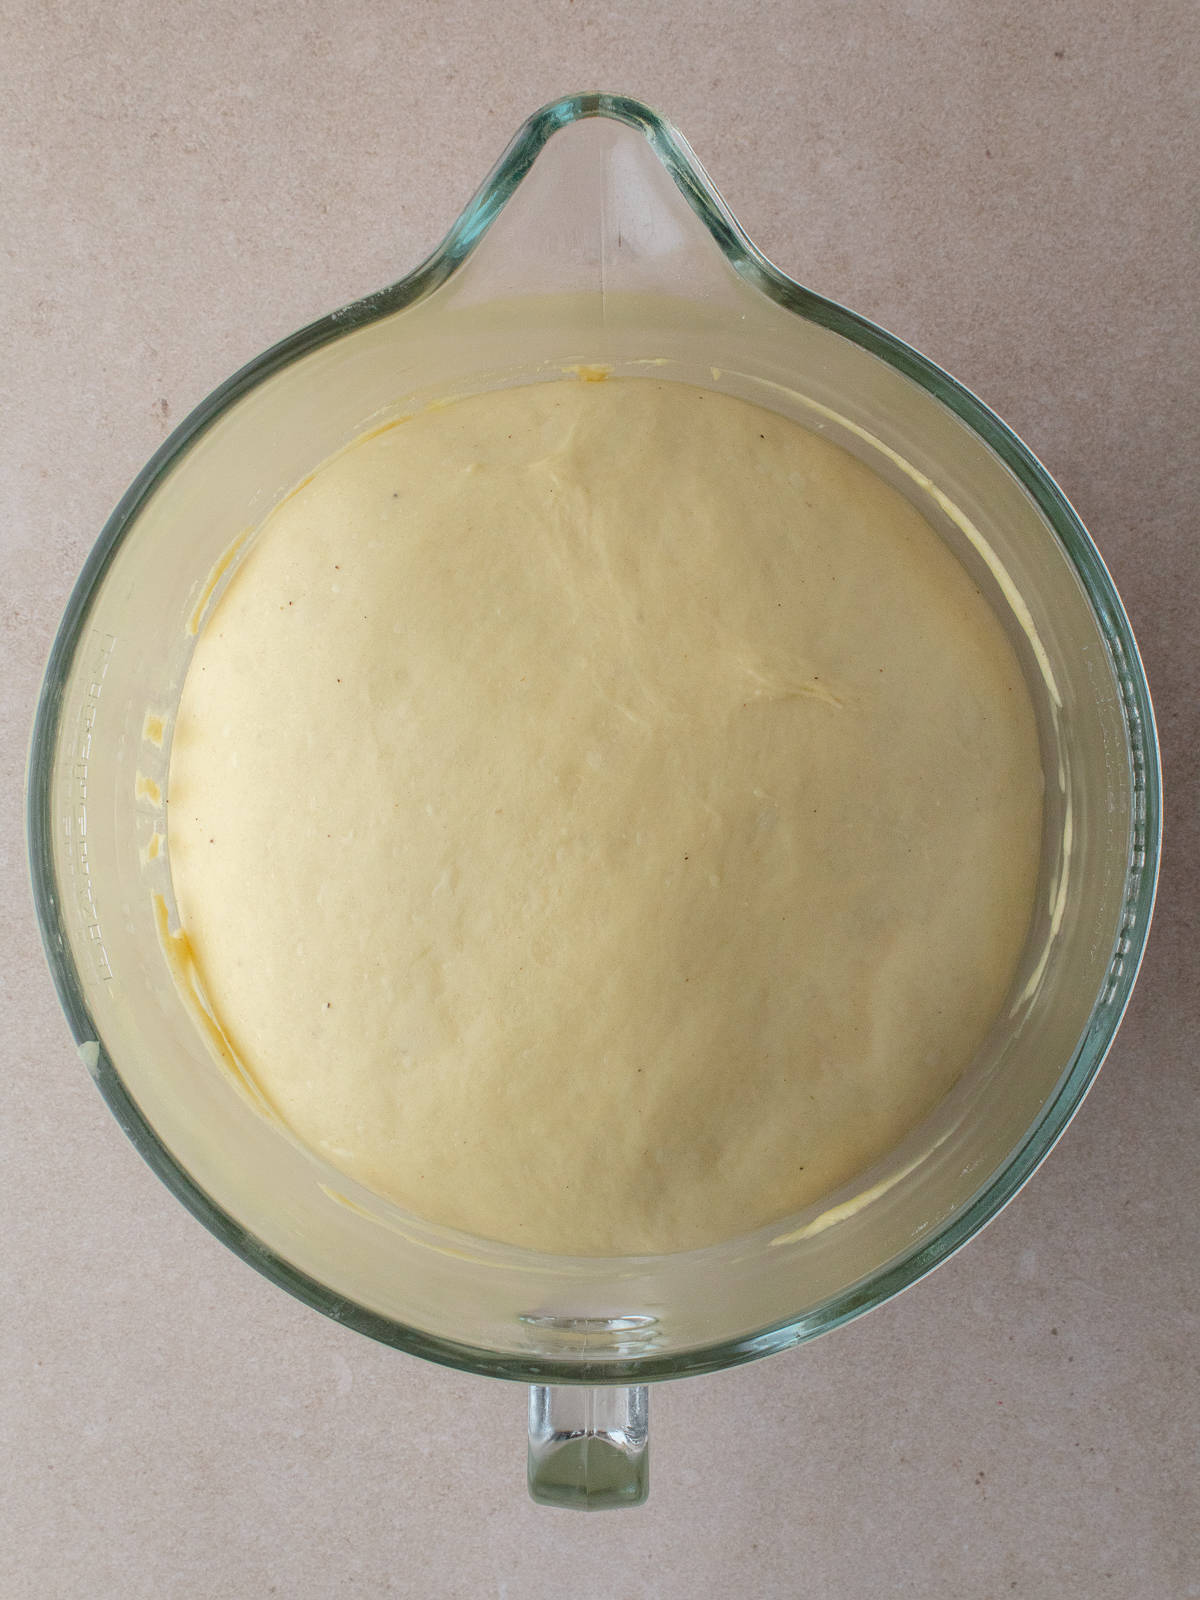 Risen dough in large mixing bowl